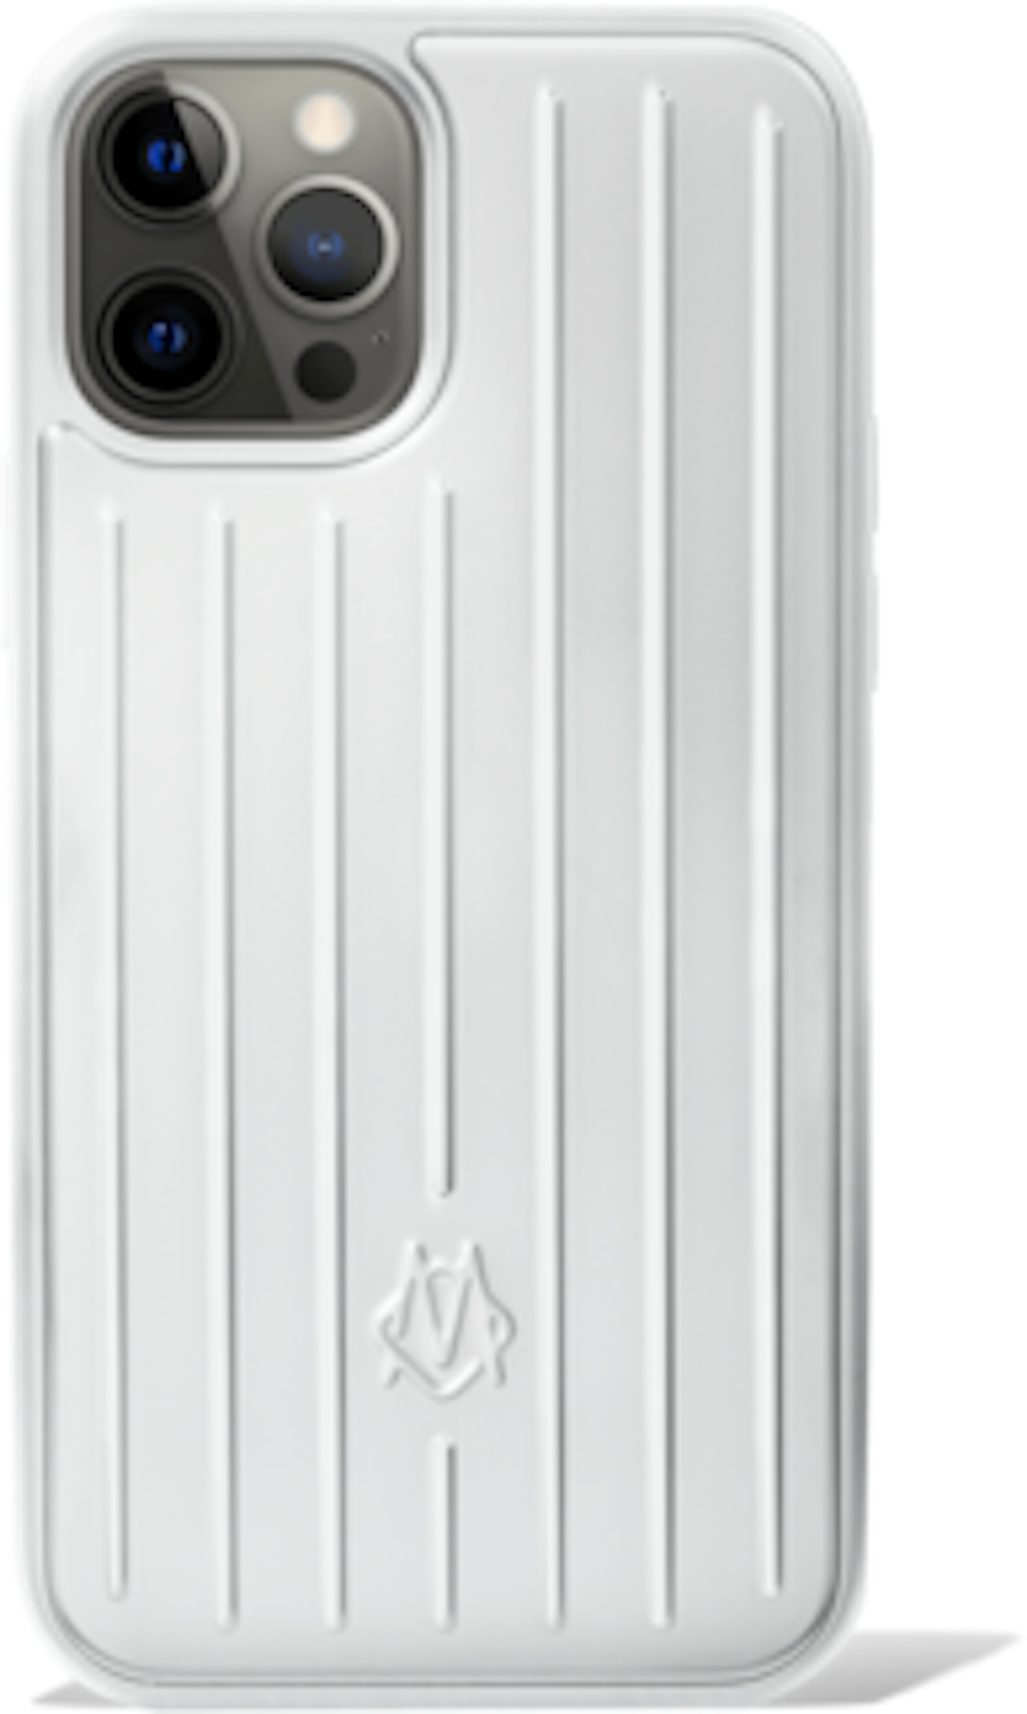 Authentic Louis Vuitton x Supreme Phone case fits iphone 7/8 plus